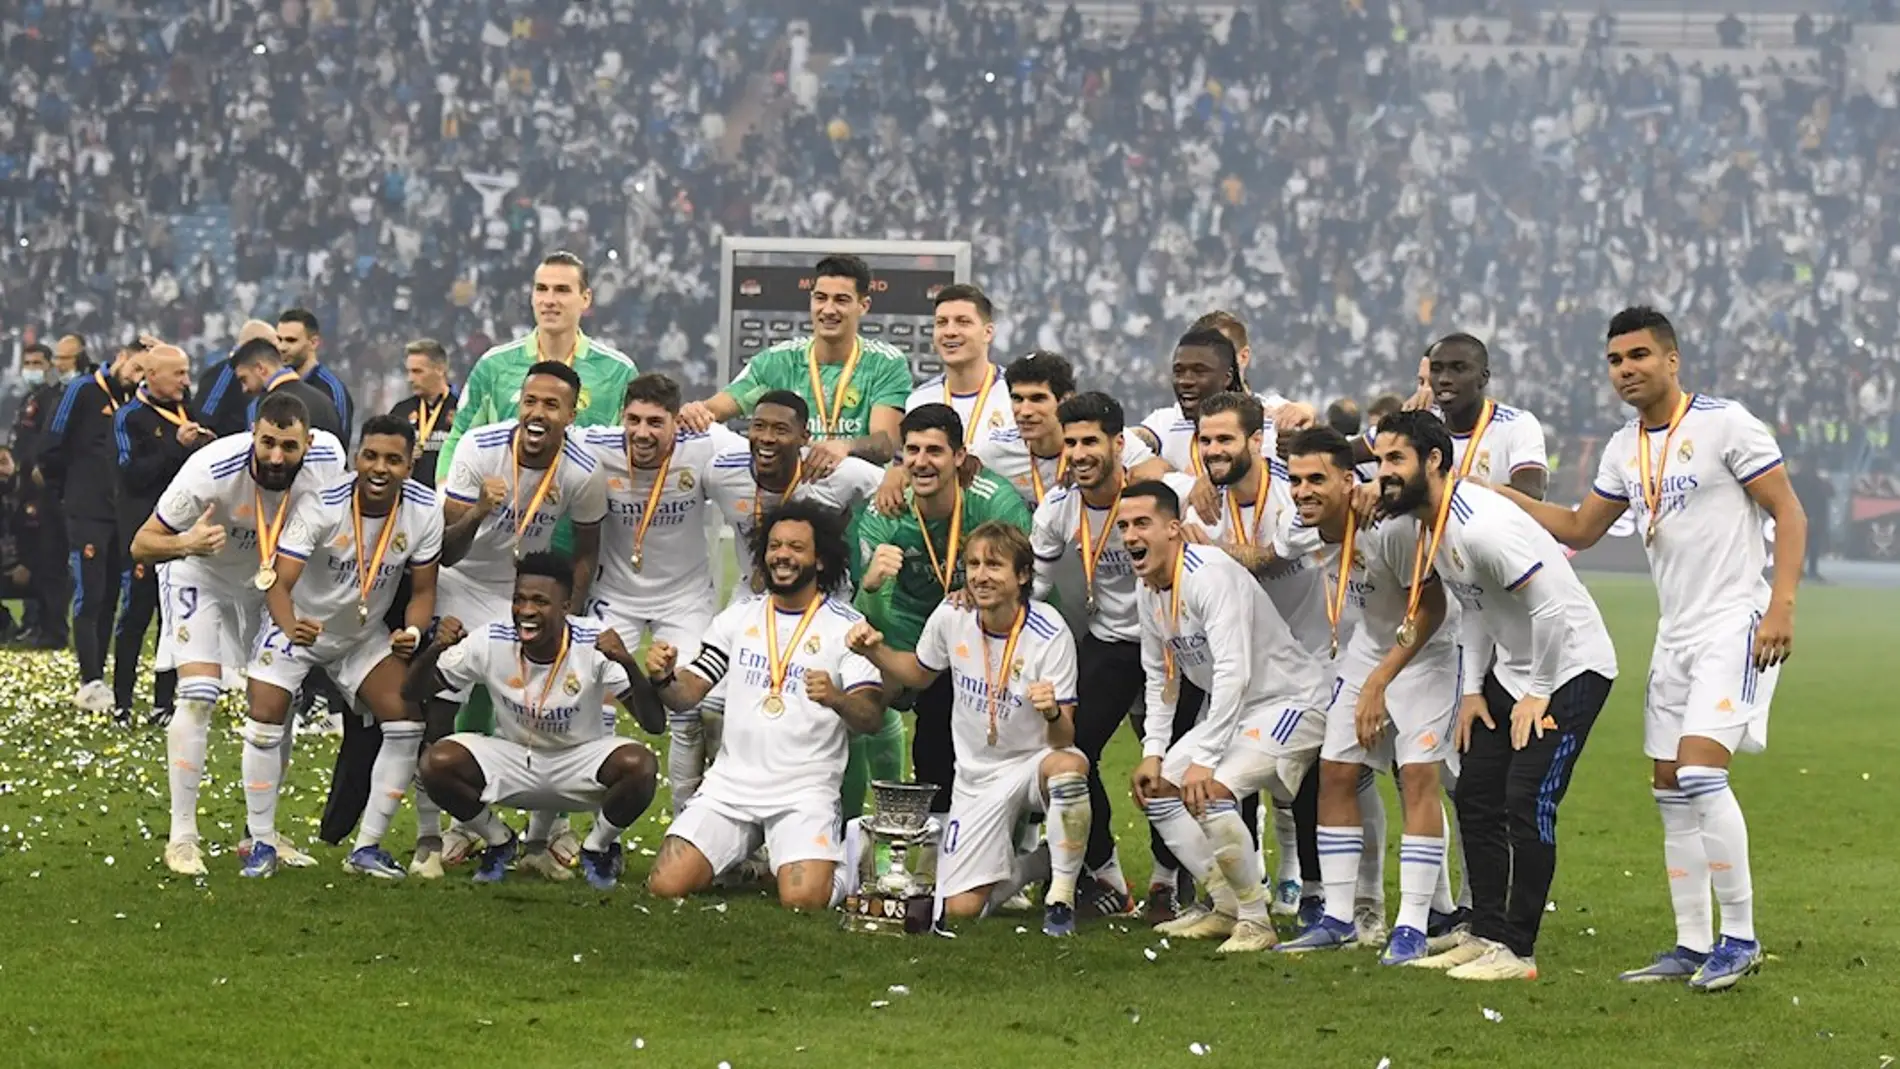 Qué primas recibirán jugadores del Real Madrid por ser campeones de Liga? | Onda Cero Radio